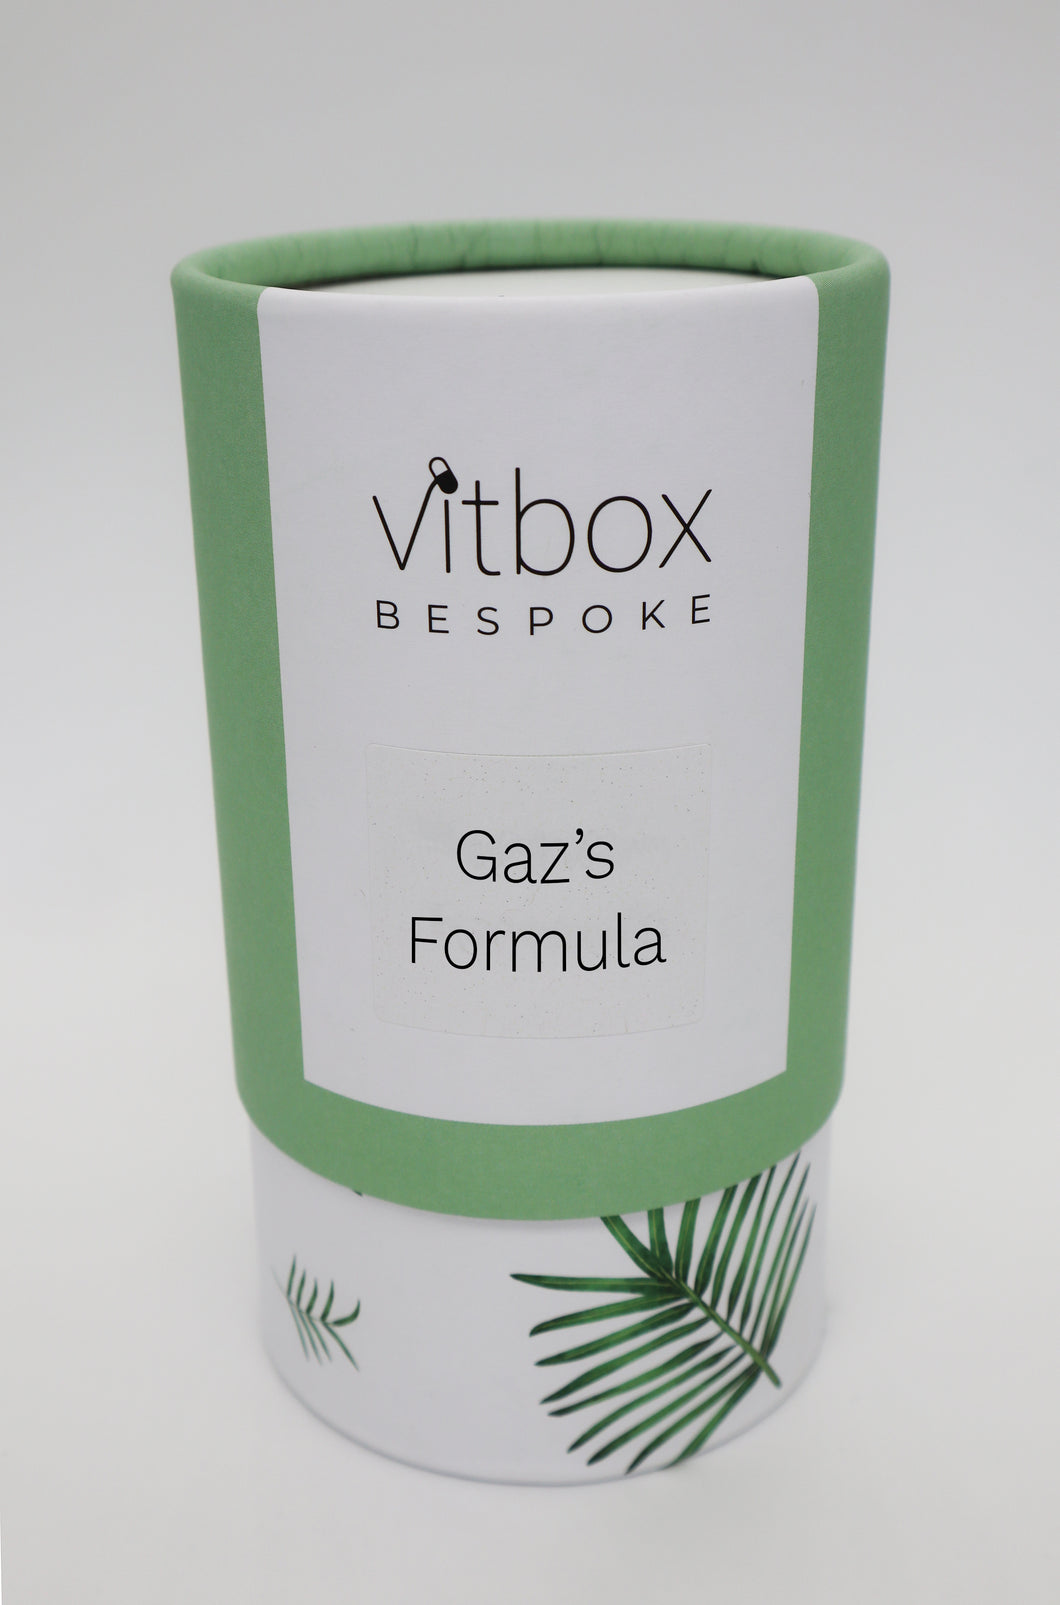 Gaz's Vitbox Bespoke